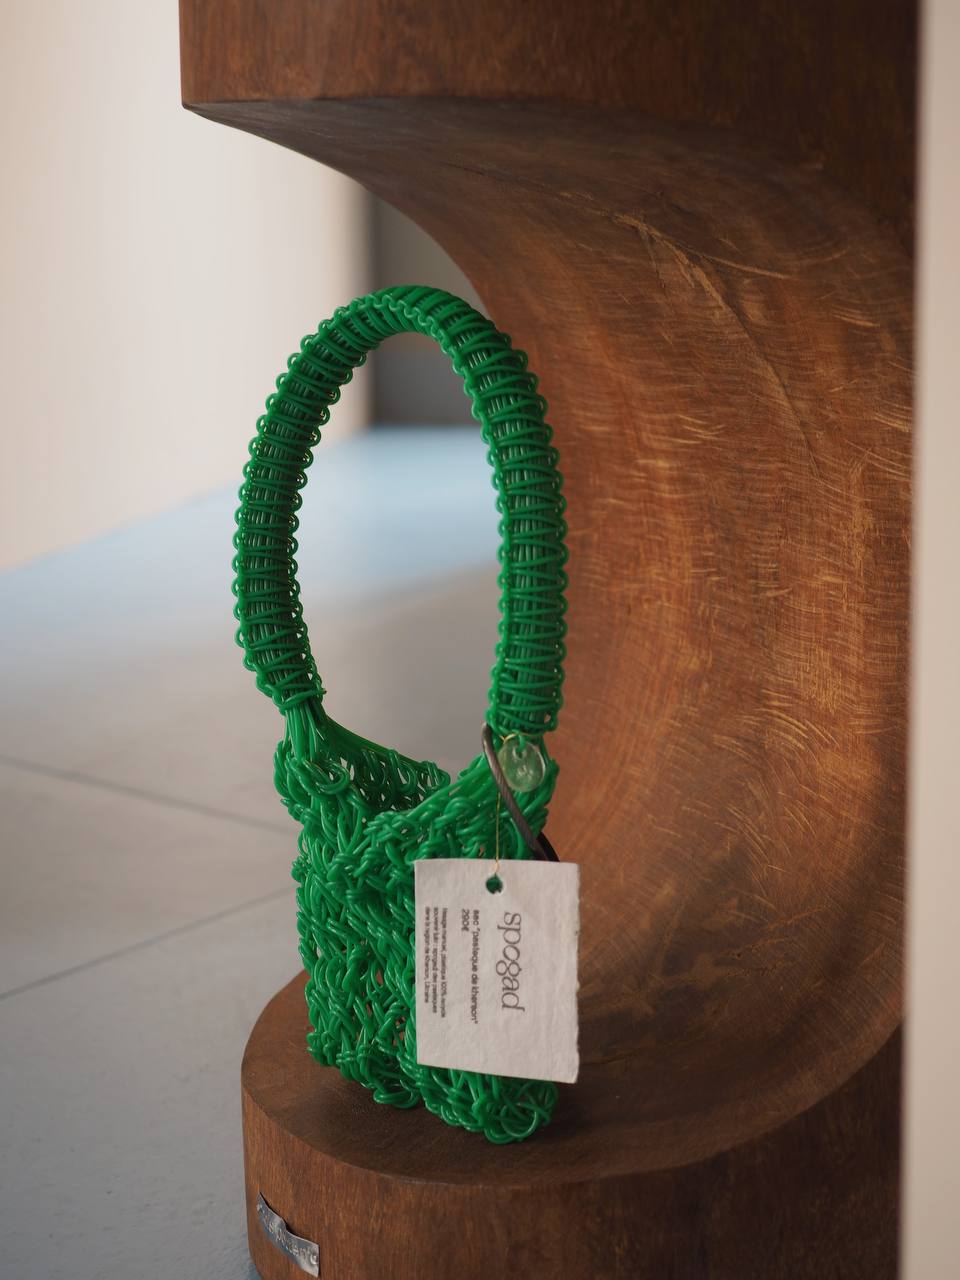 SPOGAD: украинский бренд со стильными аксессуарами из локально переработанного пластика завоевывает мировое признание в эксклюзивном Fashion Green Room Printemps Haussmann Paris.